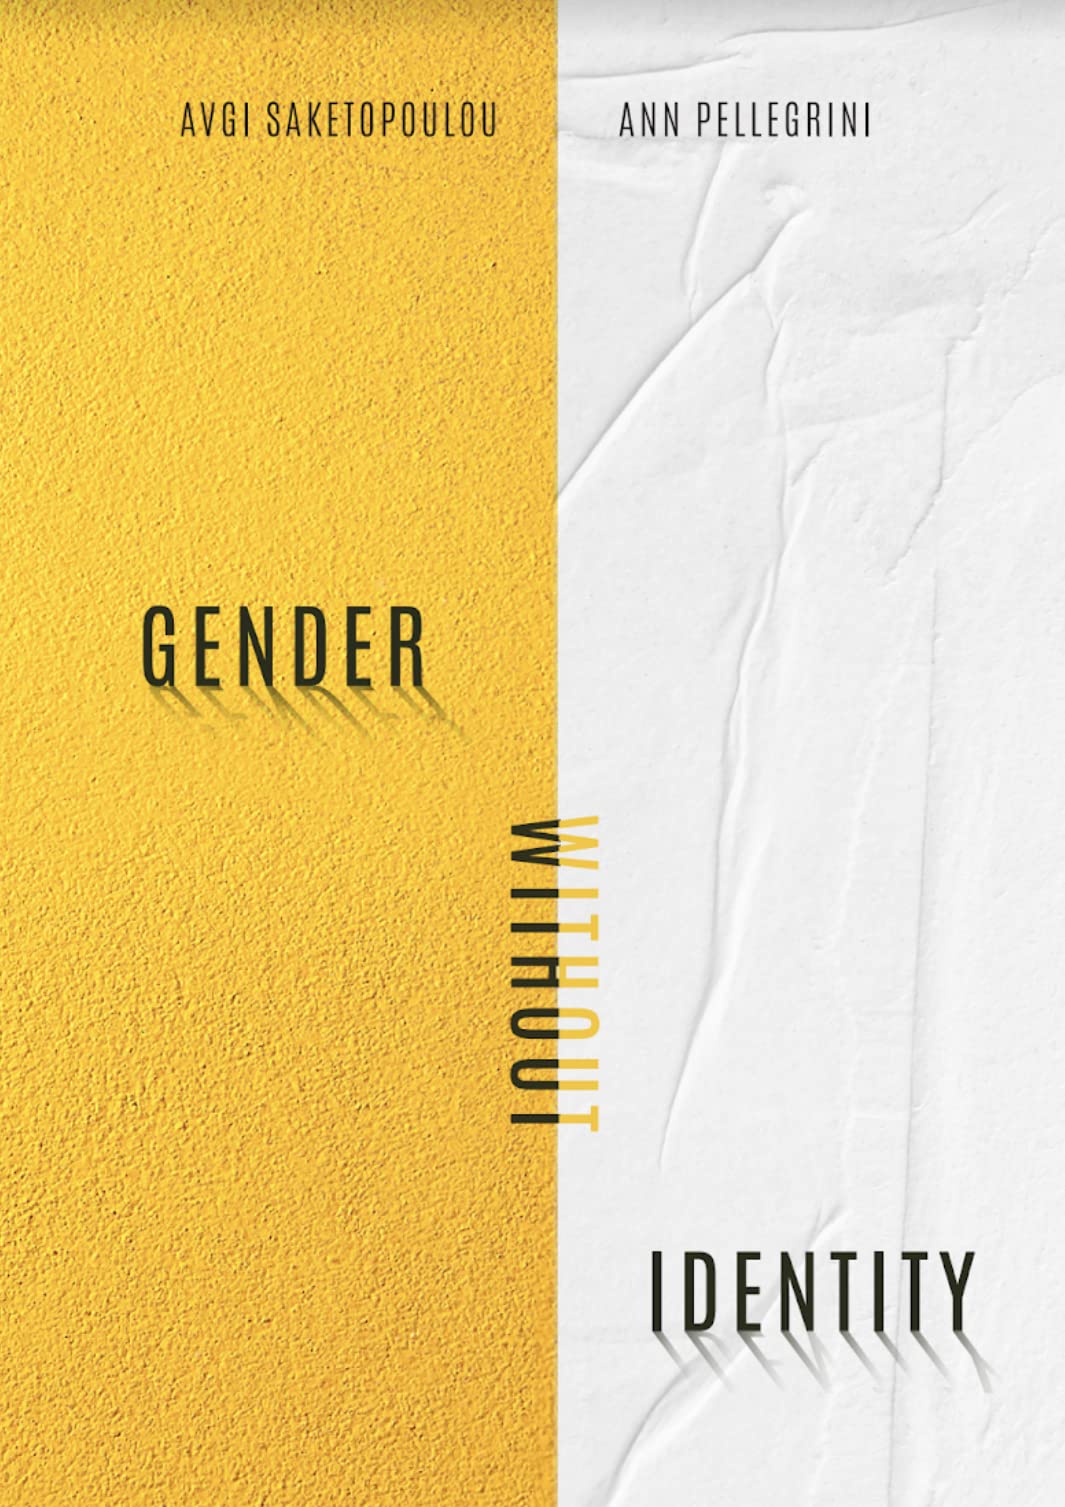 Gender Without Identity by Ann Pellegrini and Avgi Saketopoulou